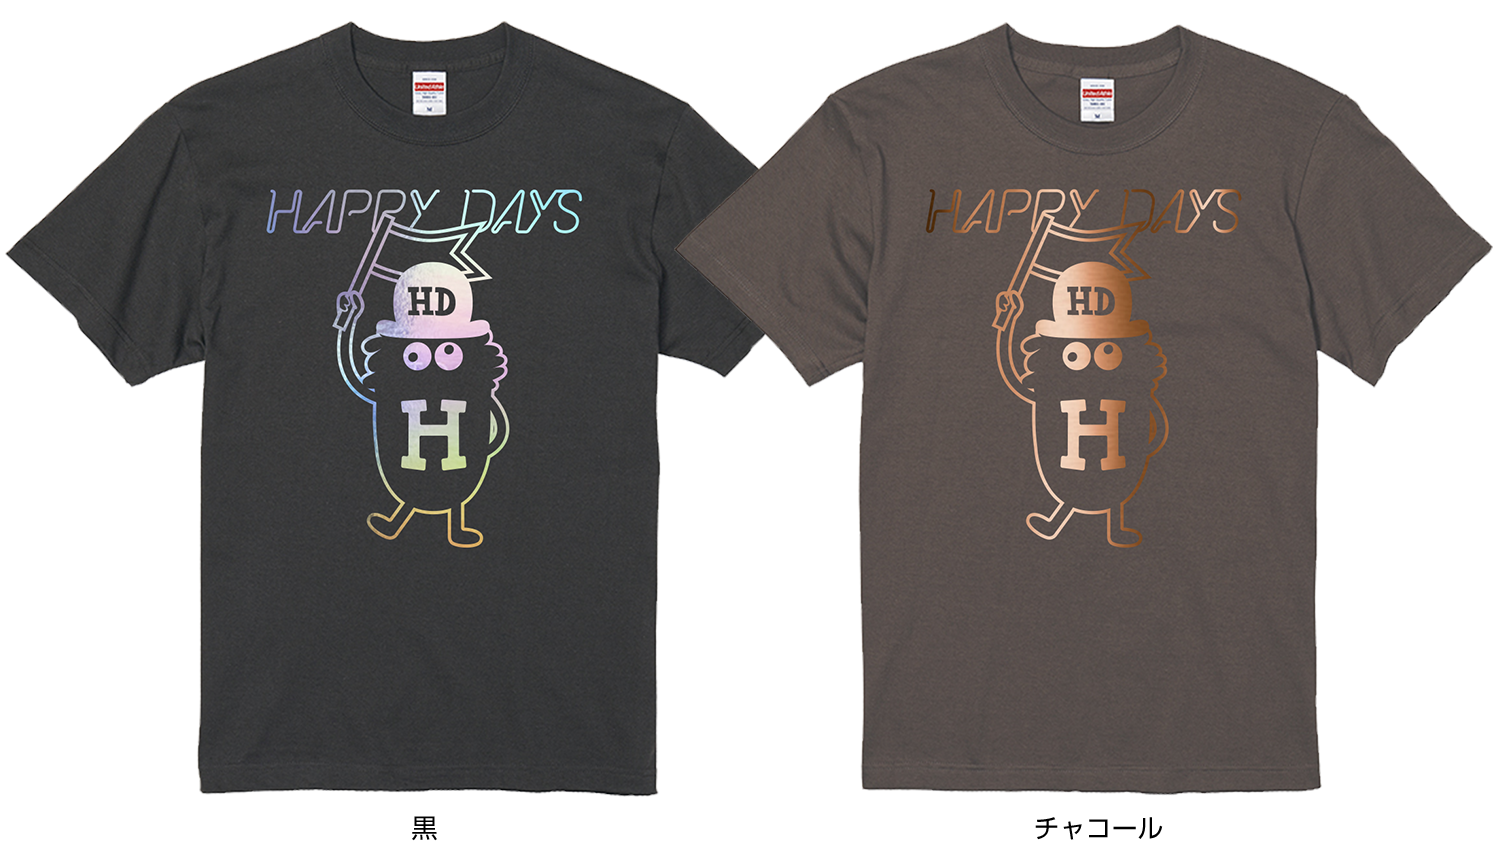 HAPPY DAYS Tシャツ